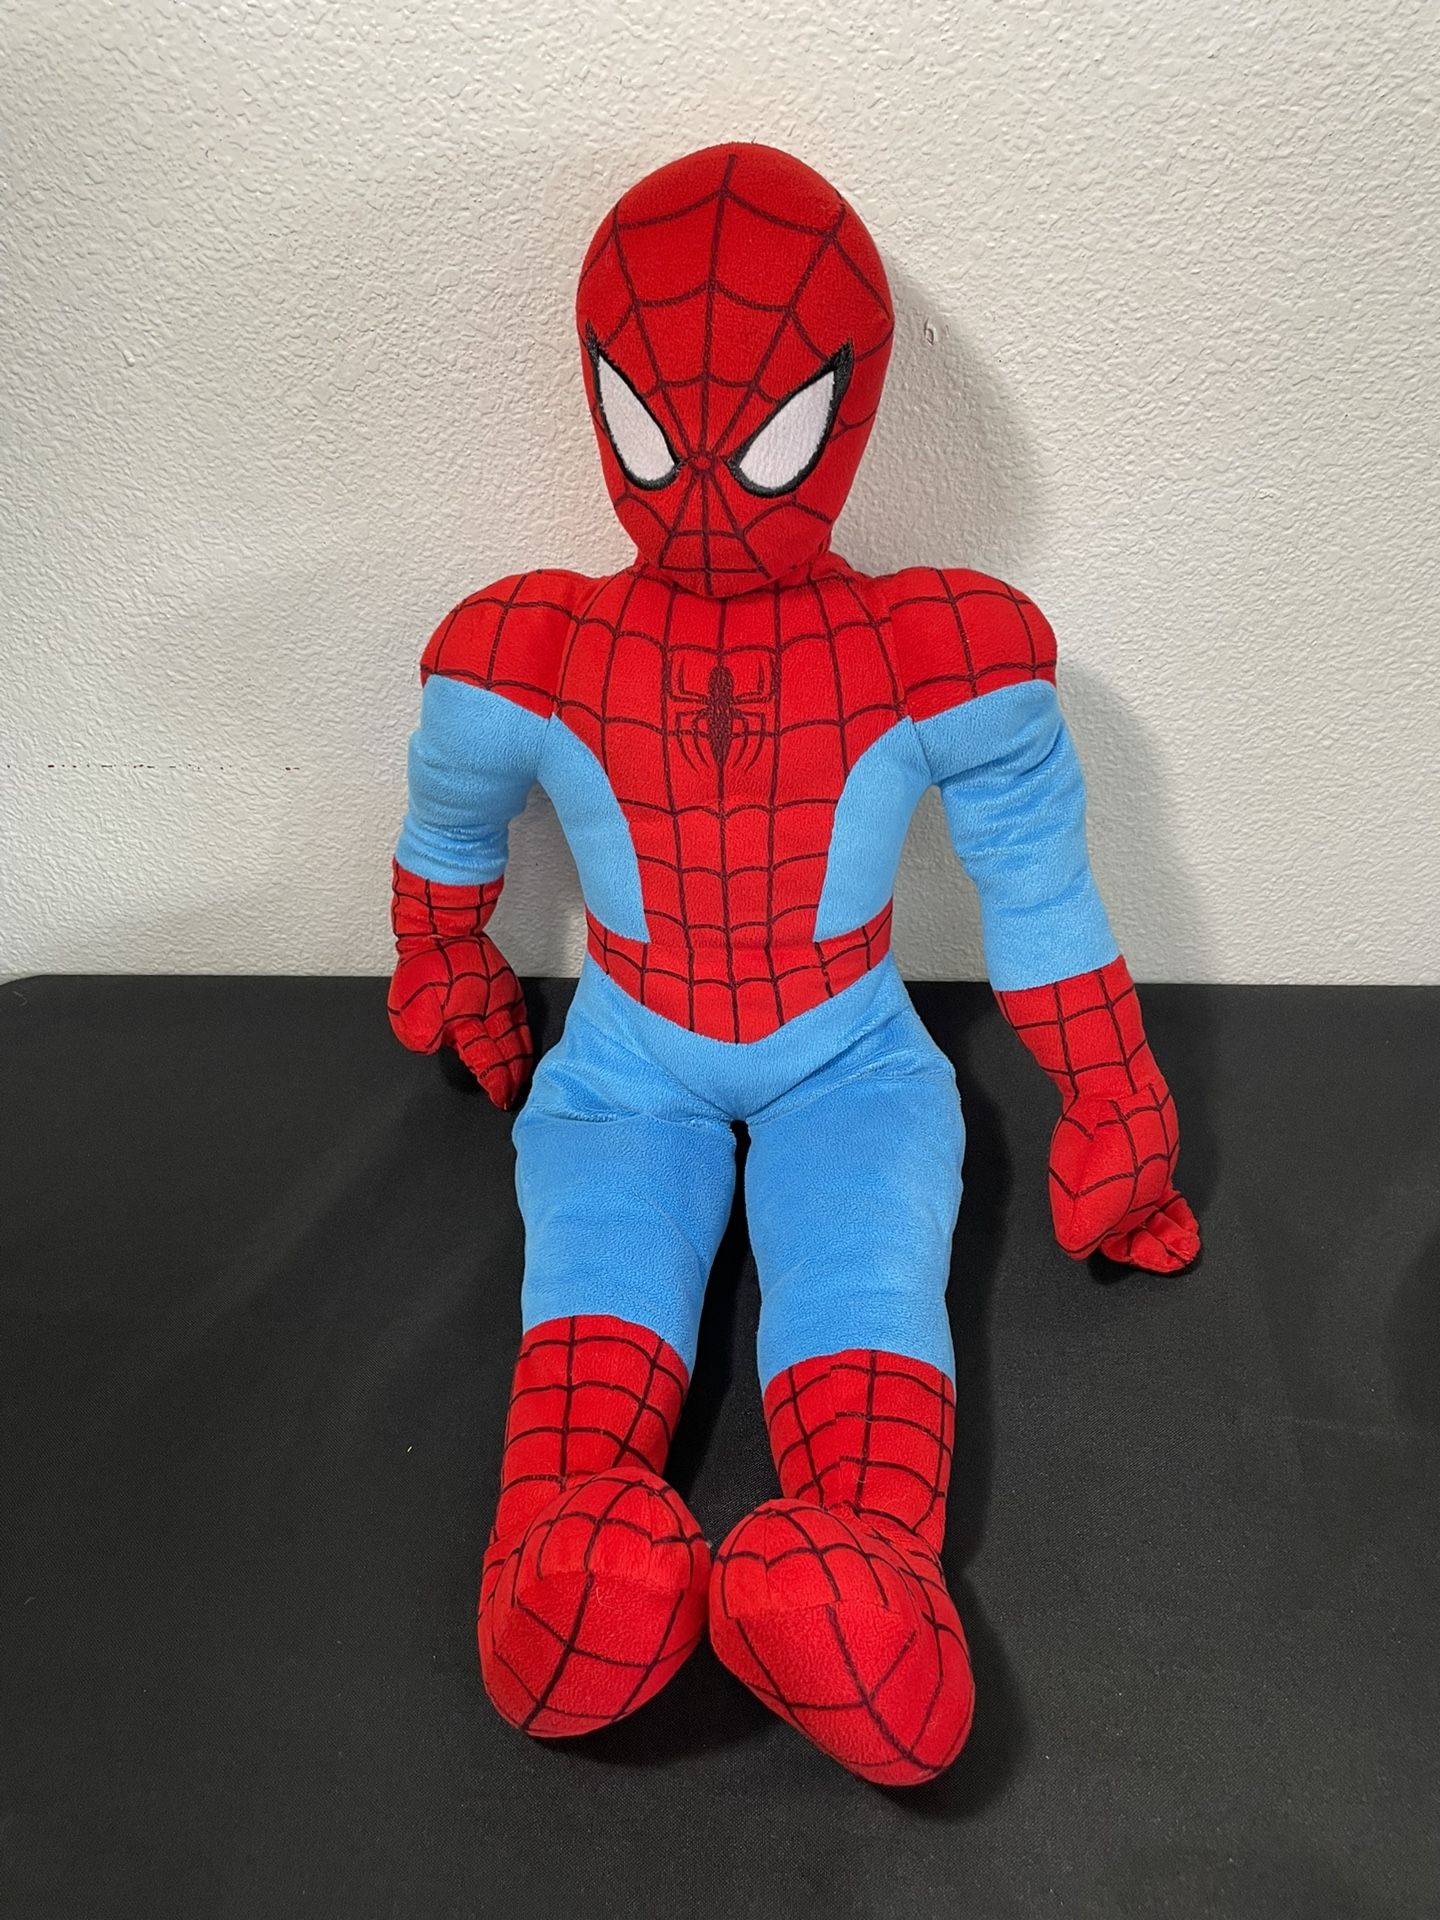 Spiderman Marvel Large 25 Inch Jumbo Plush Doll Stuffed Superhero